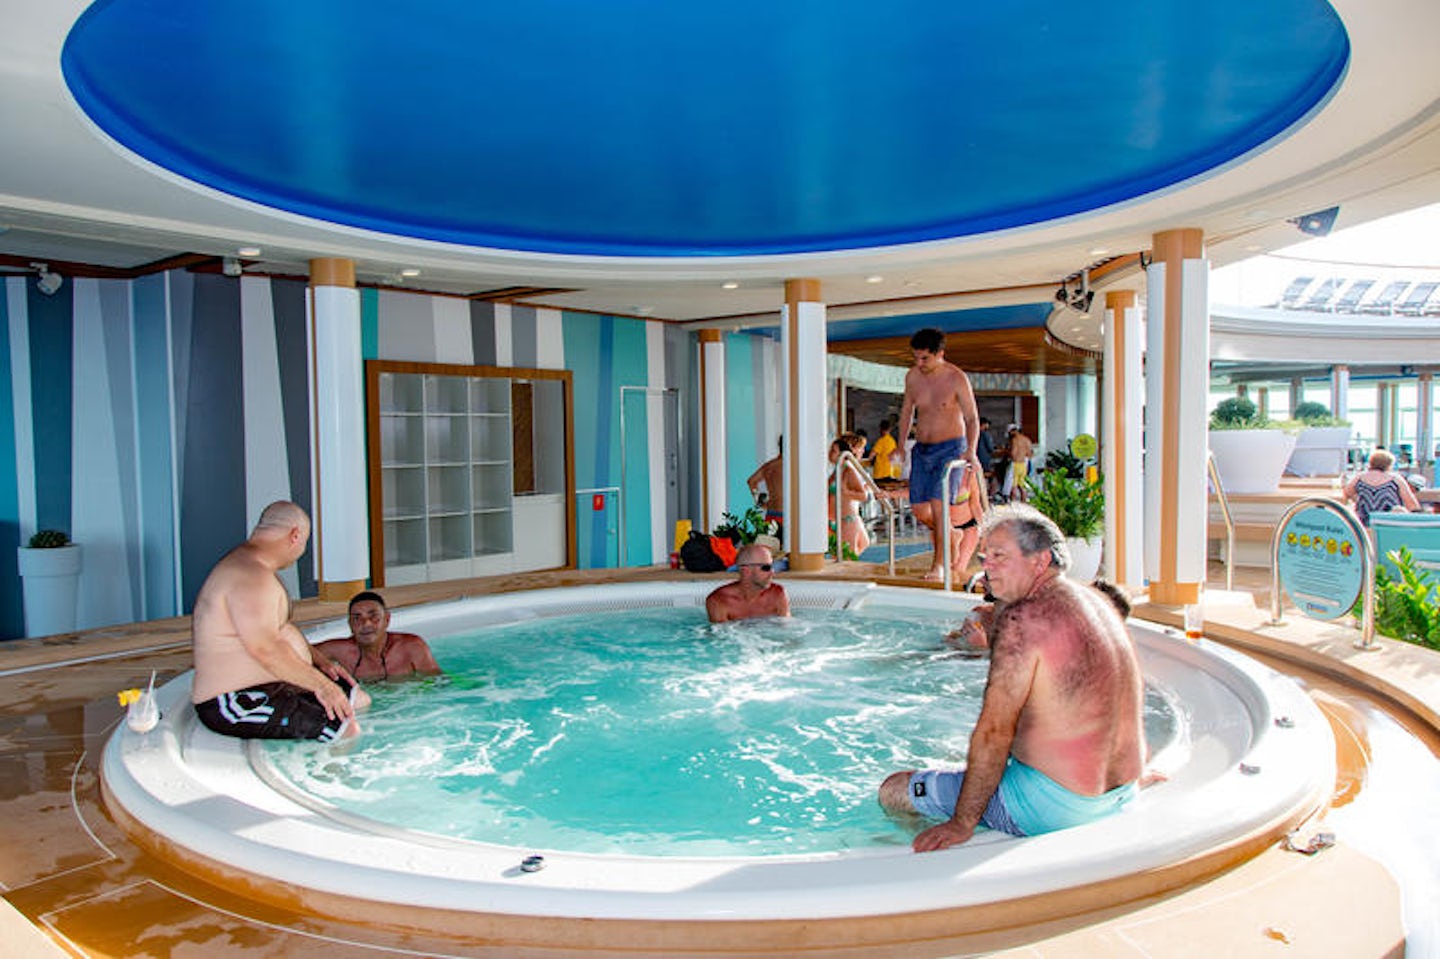 Hot Tub on Mariner of the Seas